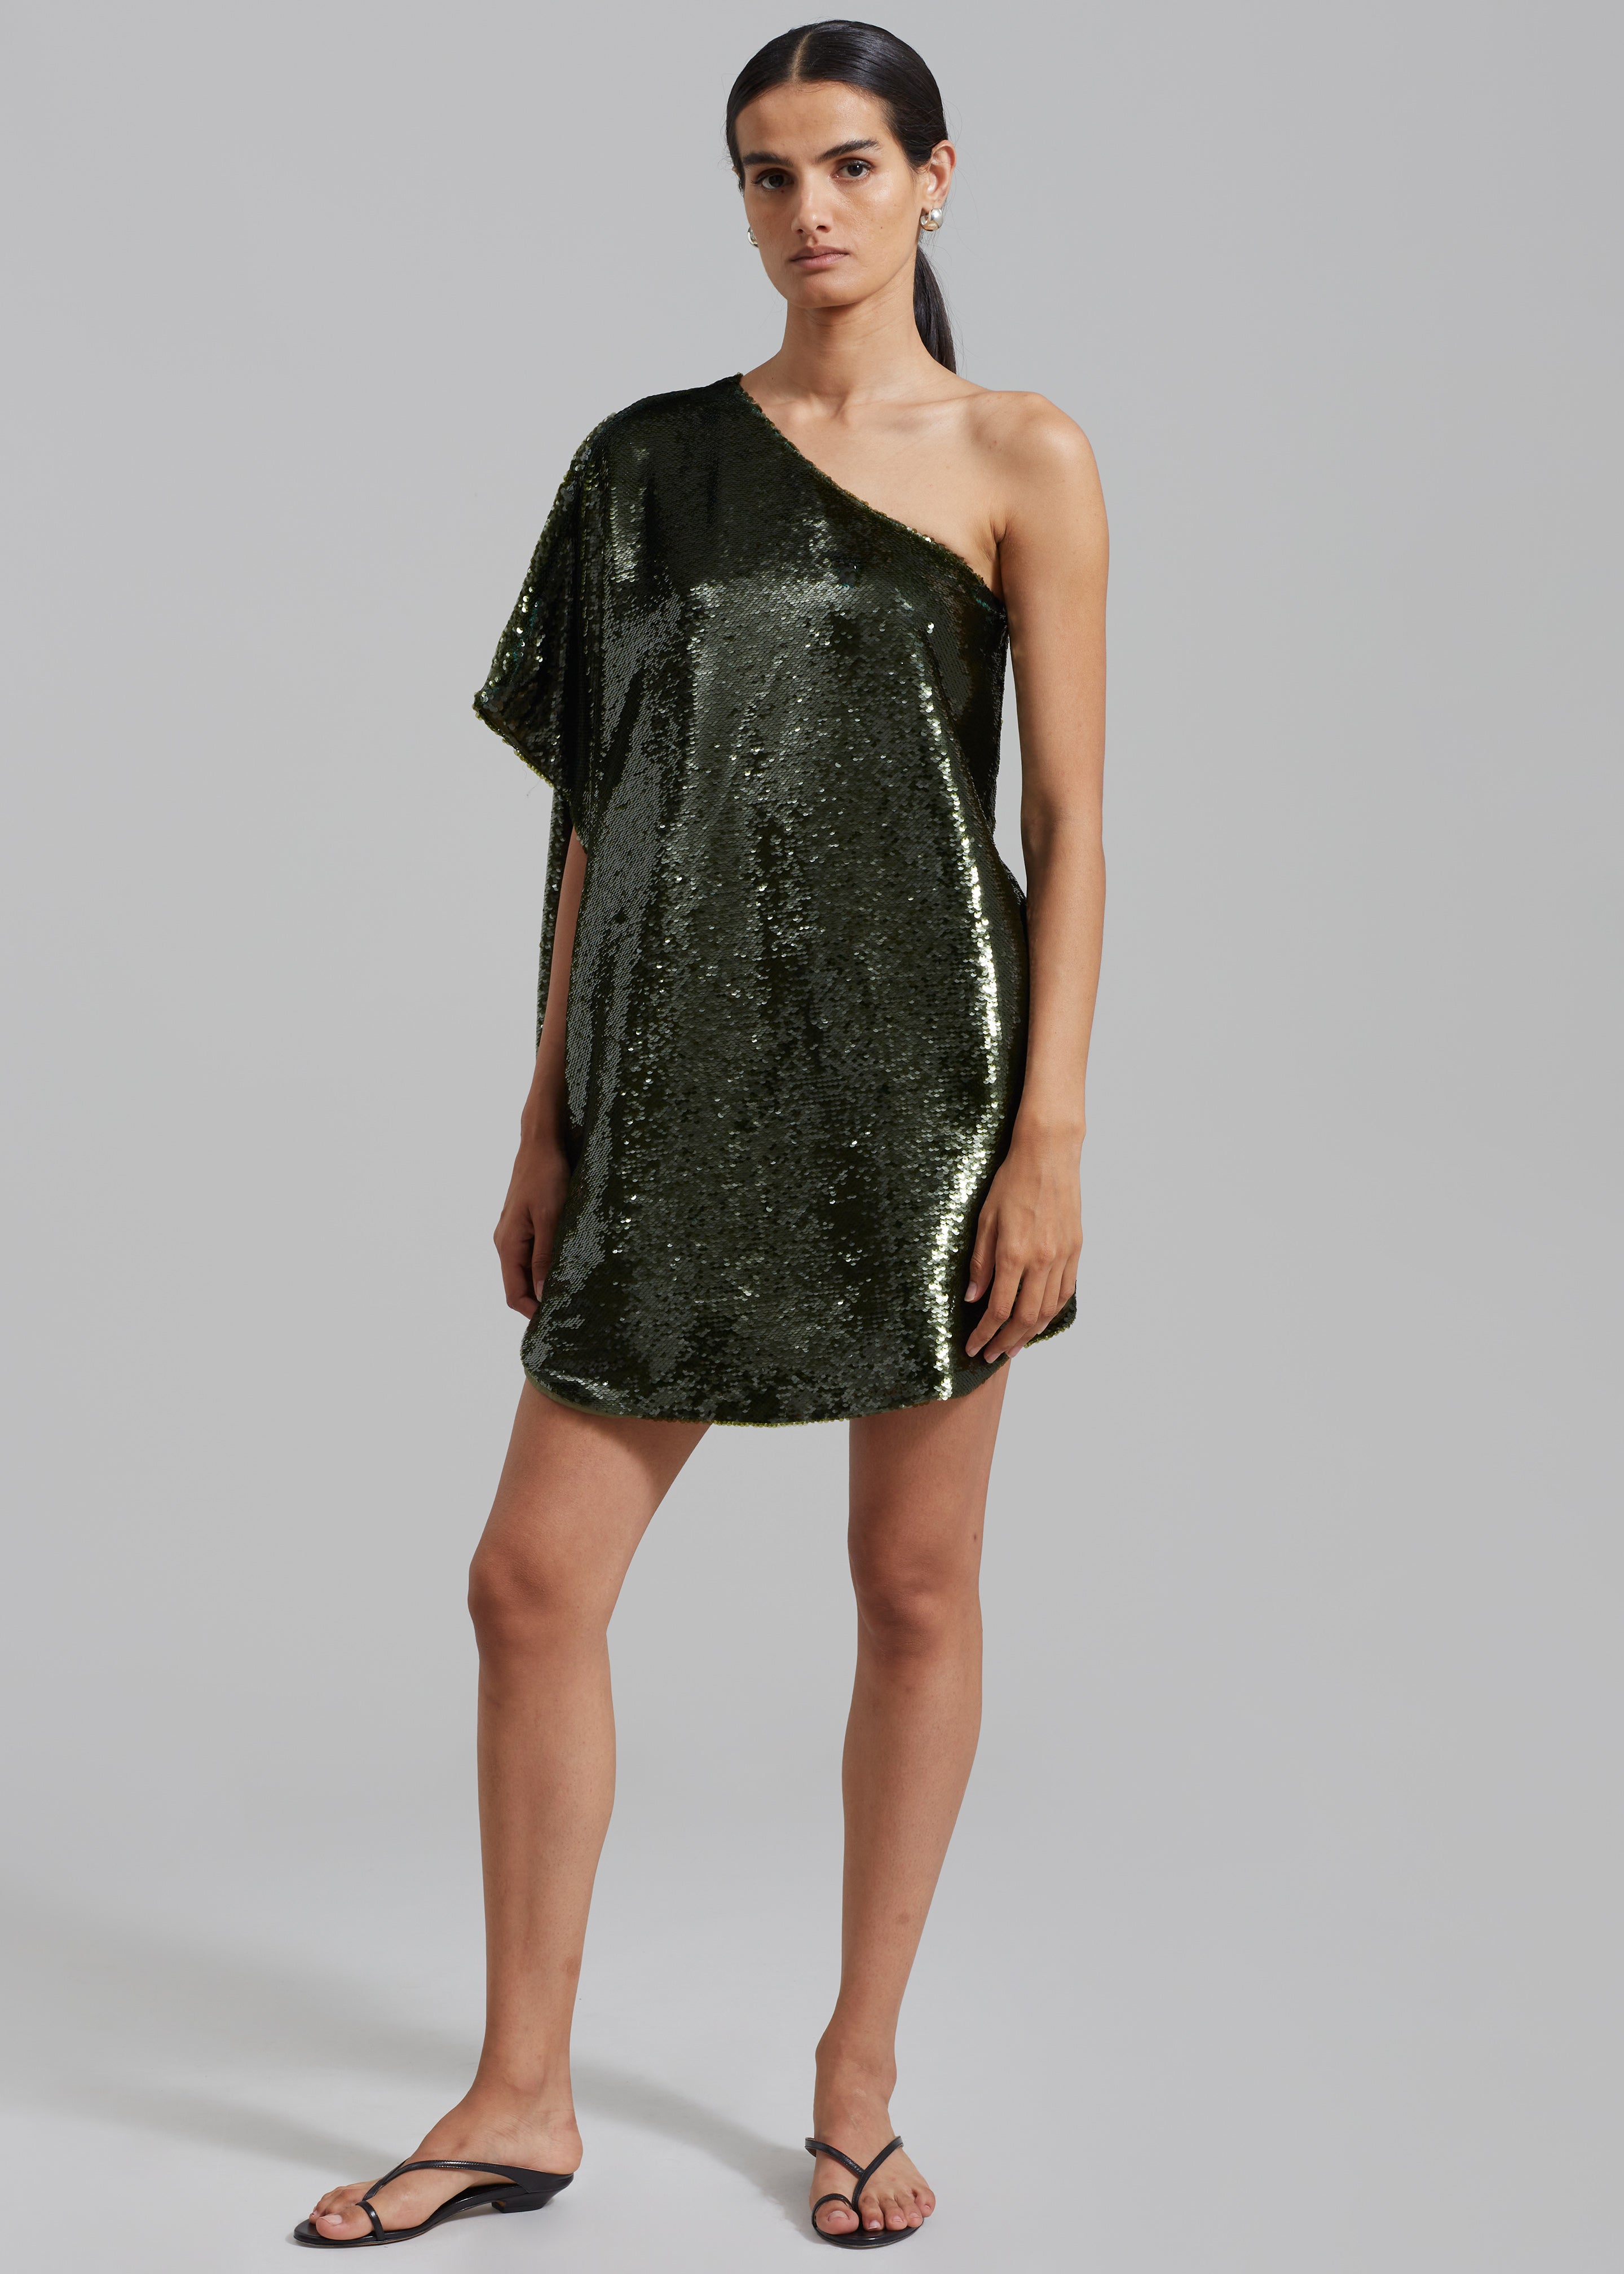 Gloria Sequins One Shoulder Dress - Olive - 2